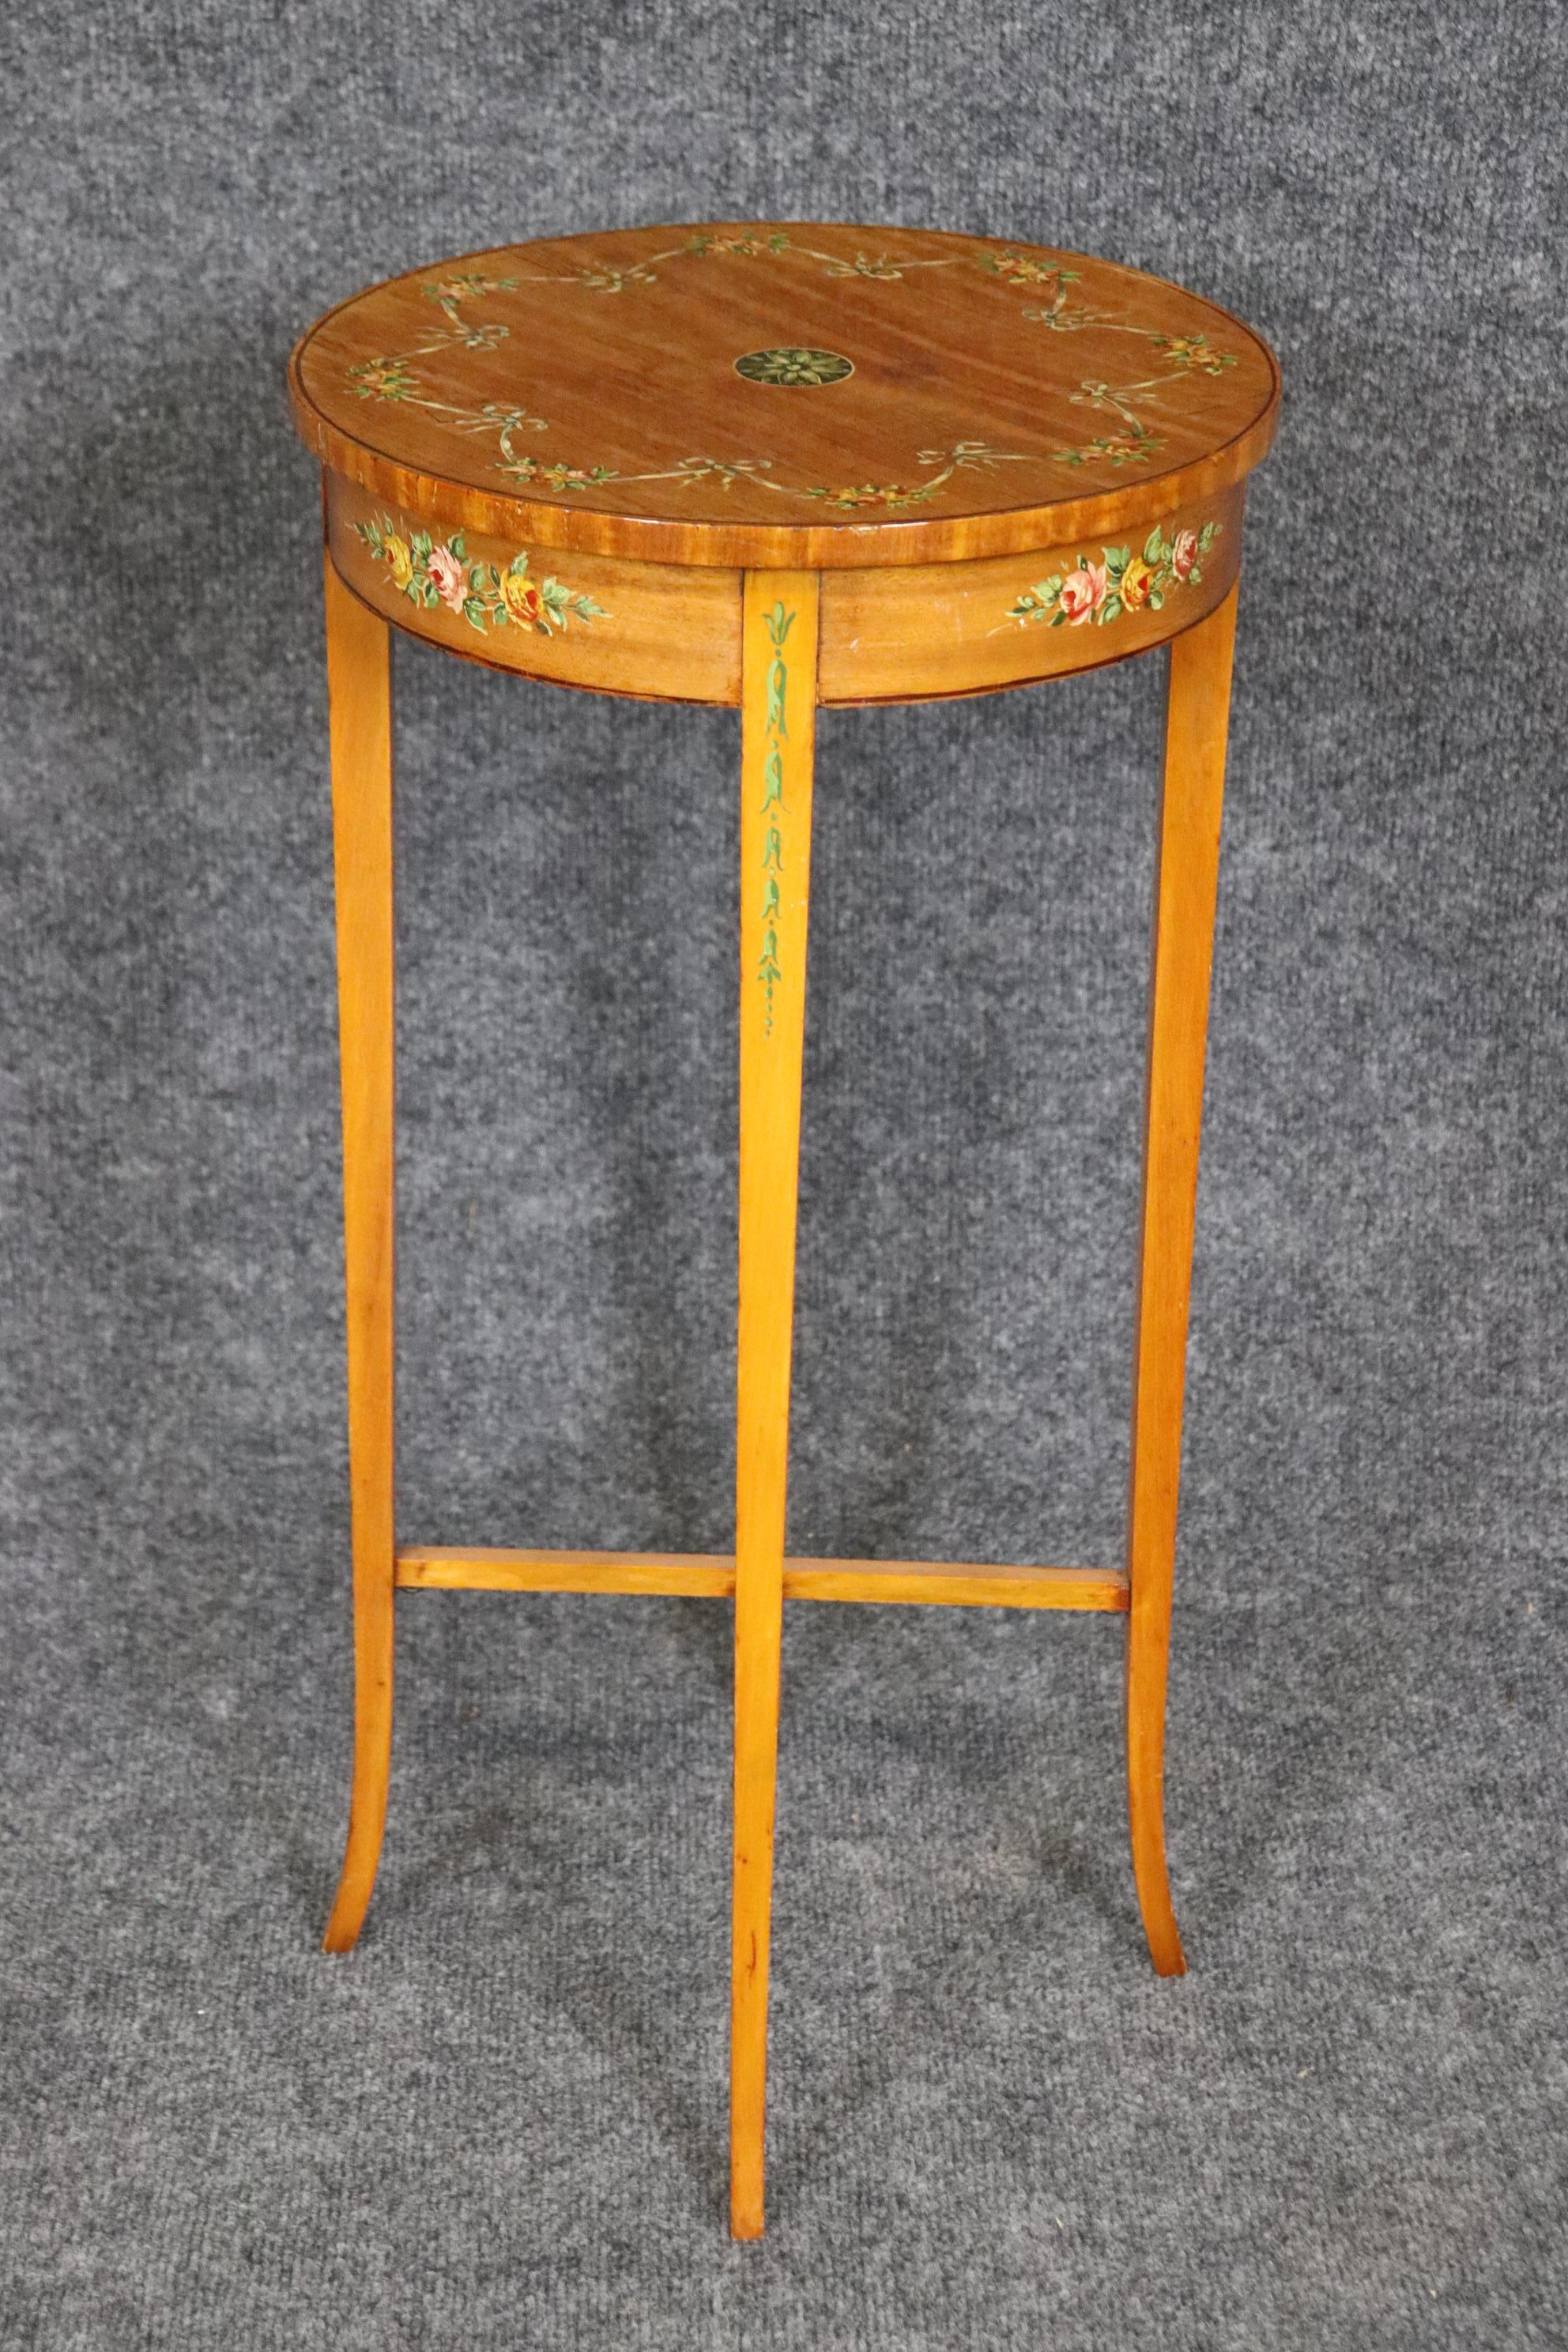 Abmessungen: Höhe: 24 1/4 in Durchmesser: 12 in 

Diese englische 19. Jahrhundert Adams Farbe dekoriert Akzent Tisch End Tisch von Gillow & Co ist von höchster Qualität! Wenn Sie sich die mitgelieferten Fotos ansehen, können Sie die Details der